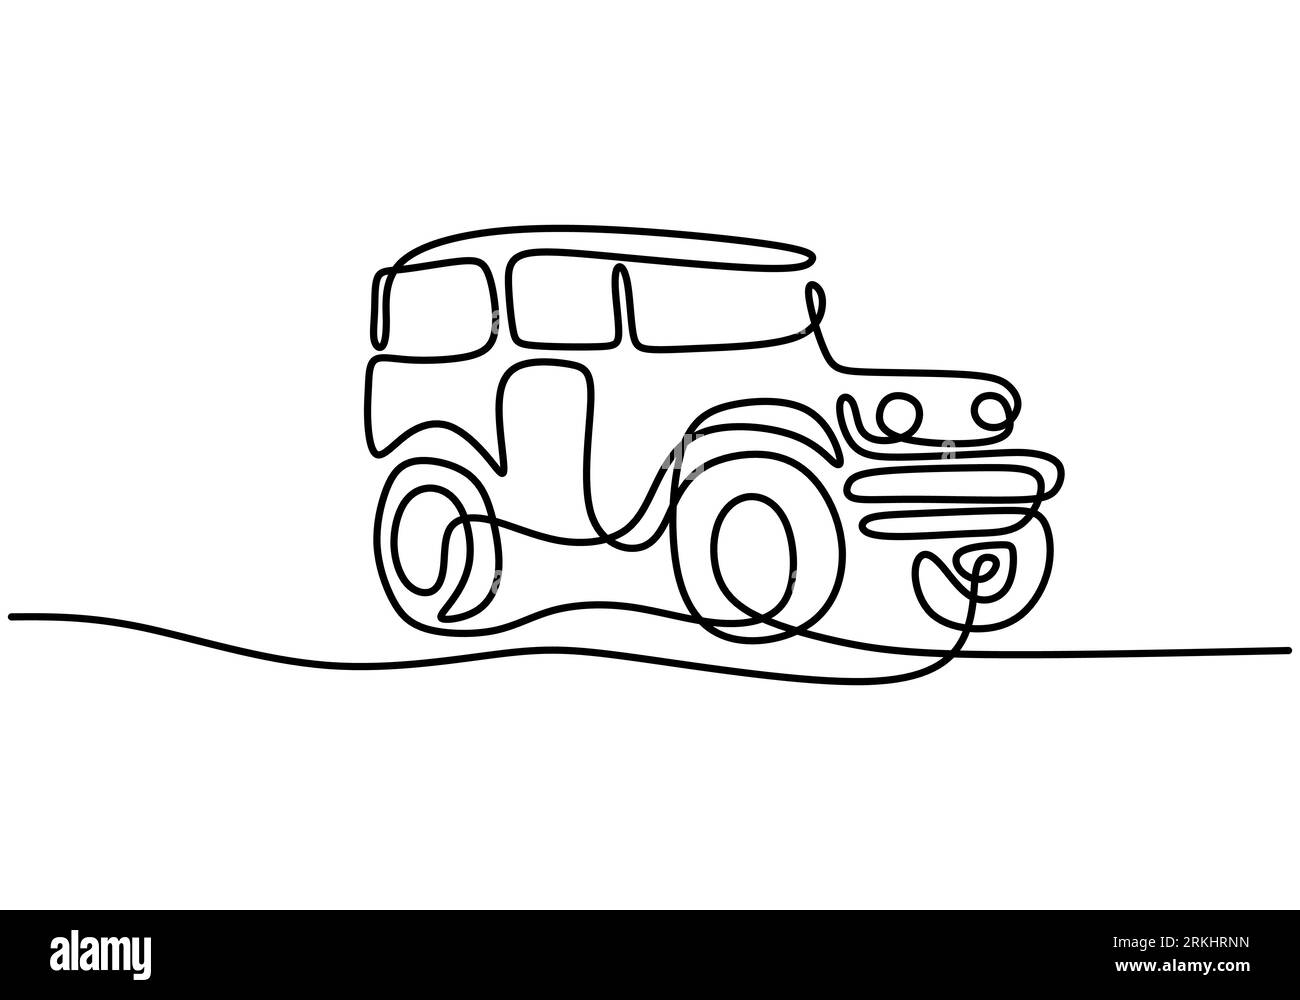 Une ligne continue tracée à une main de voiture de wrangler de jeep. Concept de transport de véhicule de rallye hors route aventure. Une jeep classique isolée sur whit Illustration de Vecteur